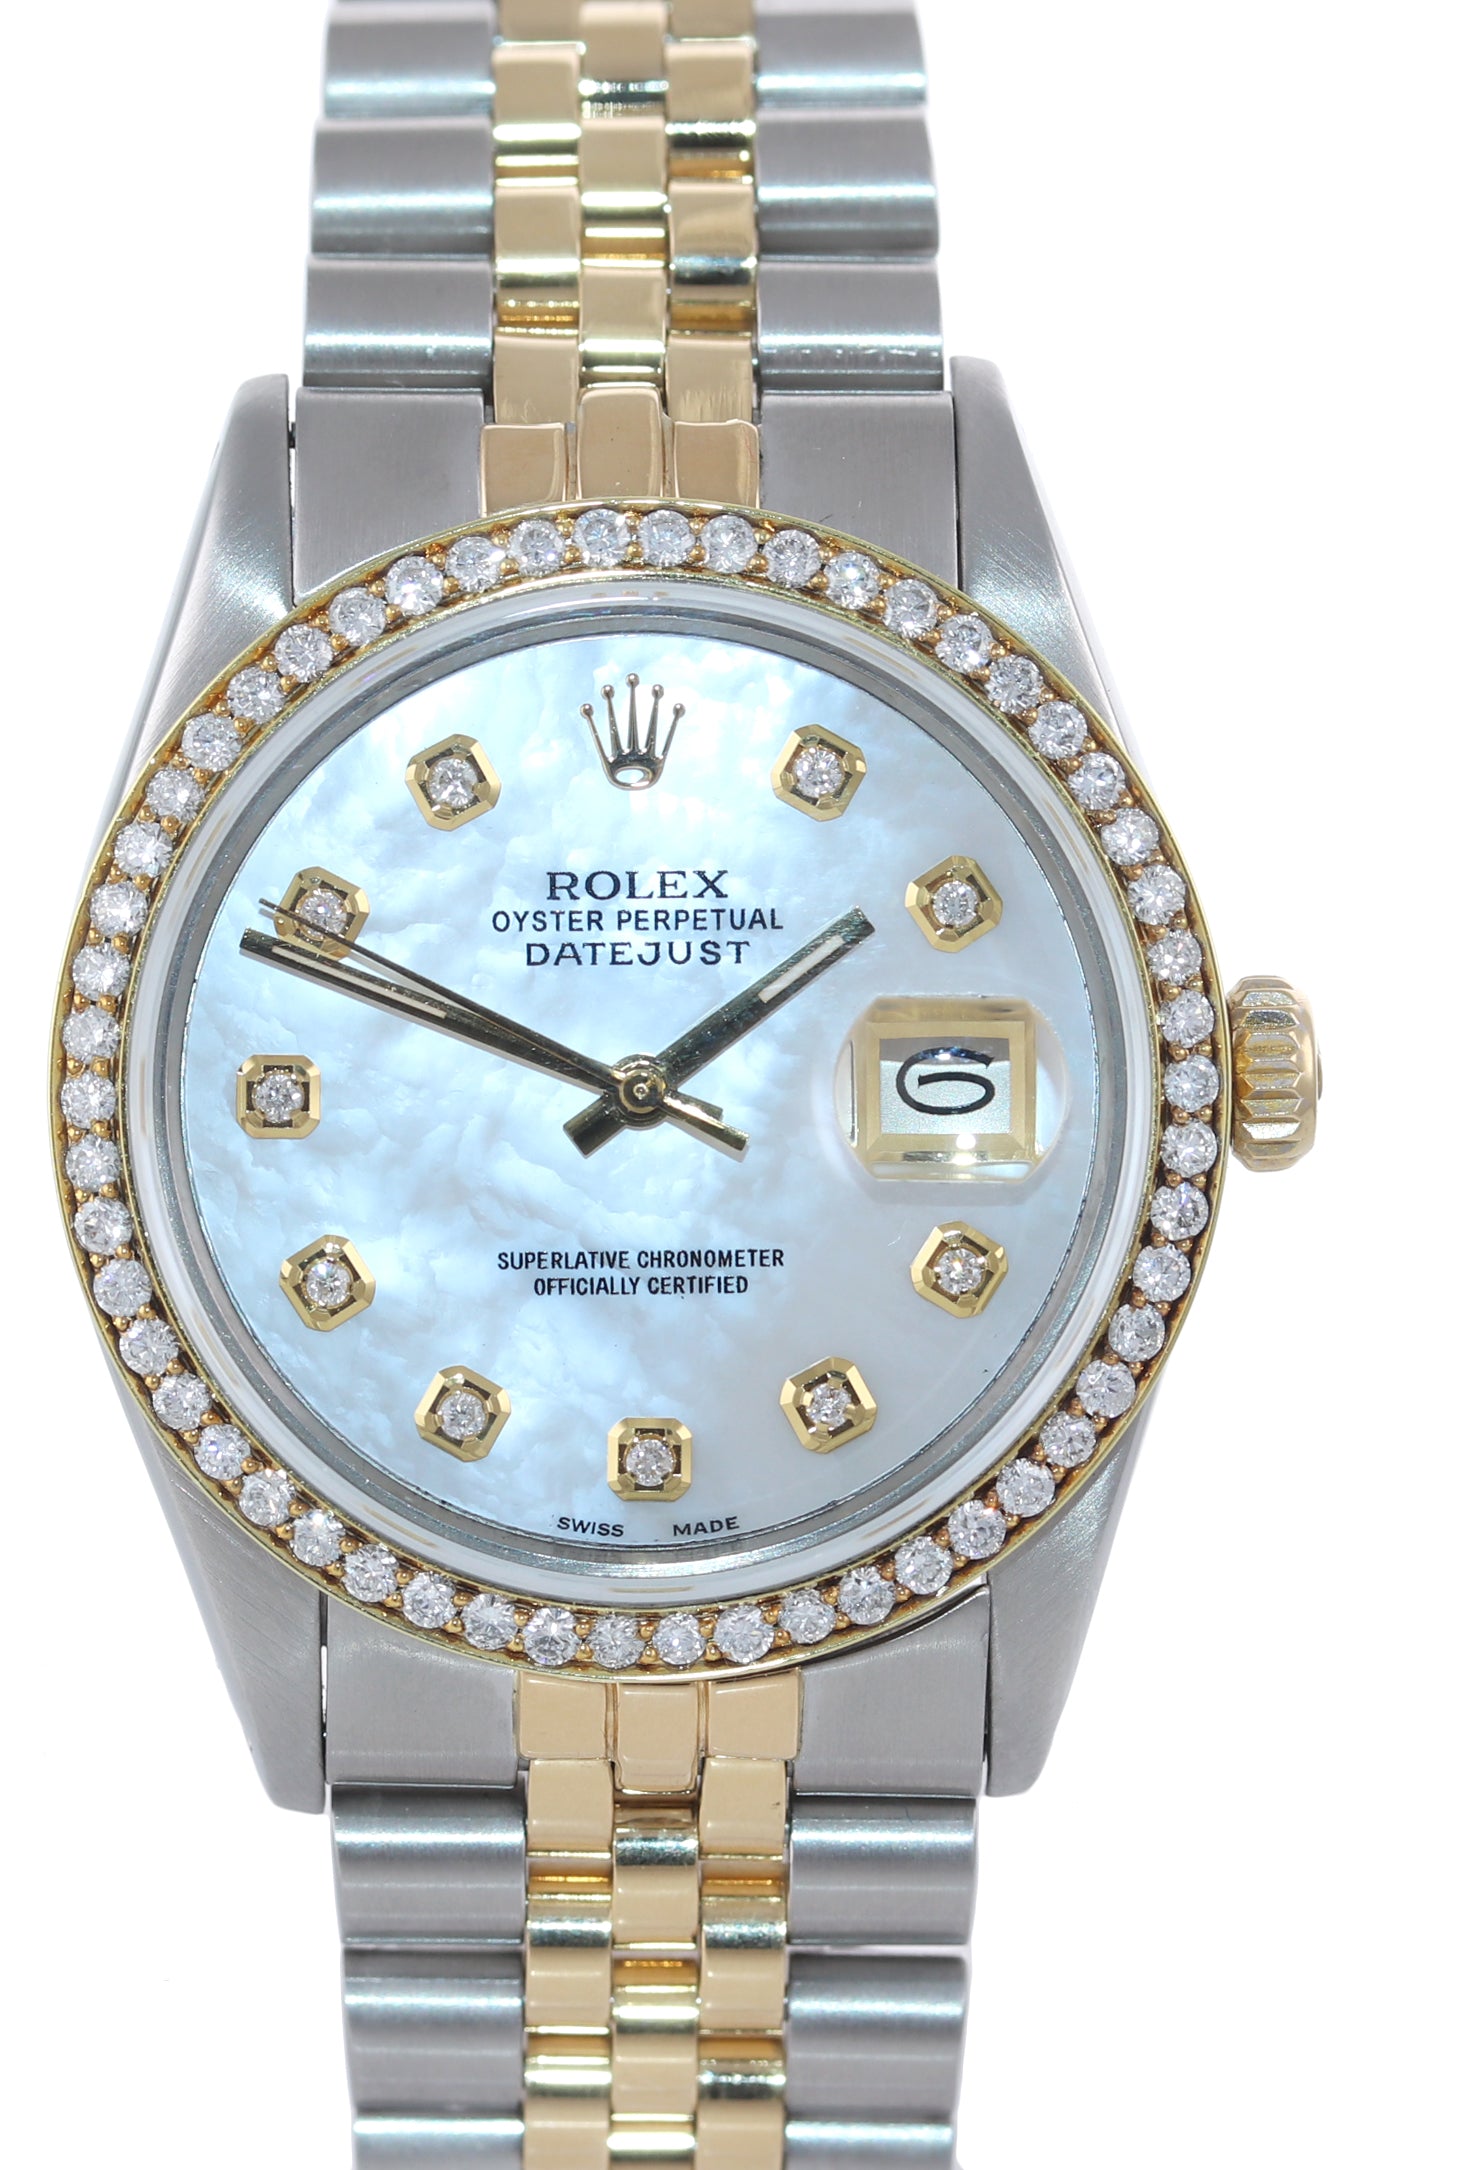 DIAMOND Bezel Rolex DateJust 36mm 16013 Diamond Bezel MOP Dial Watch Box